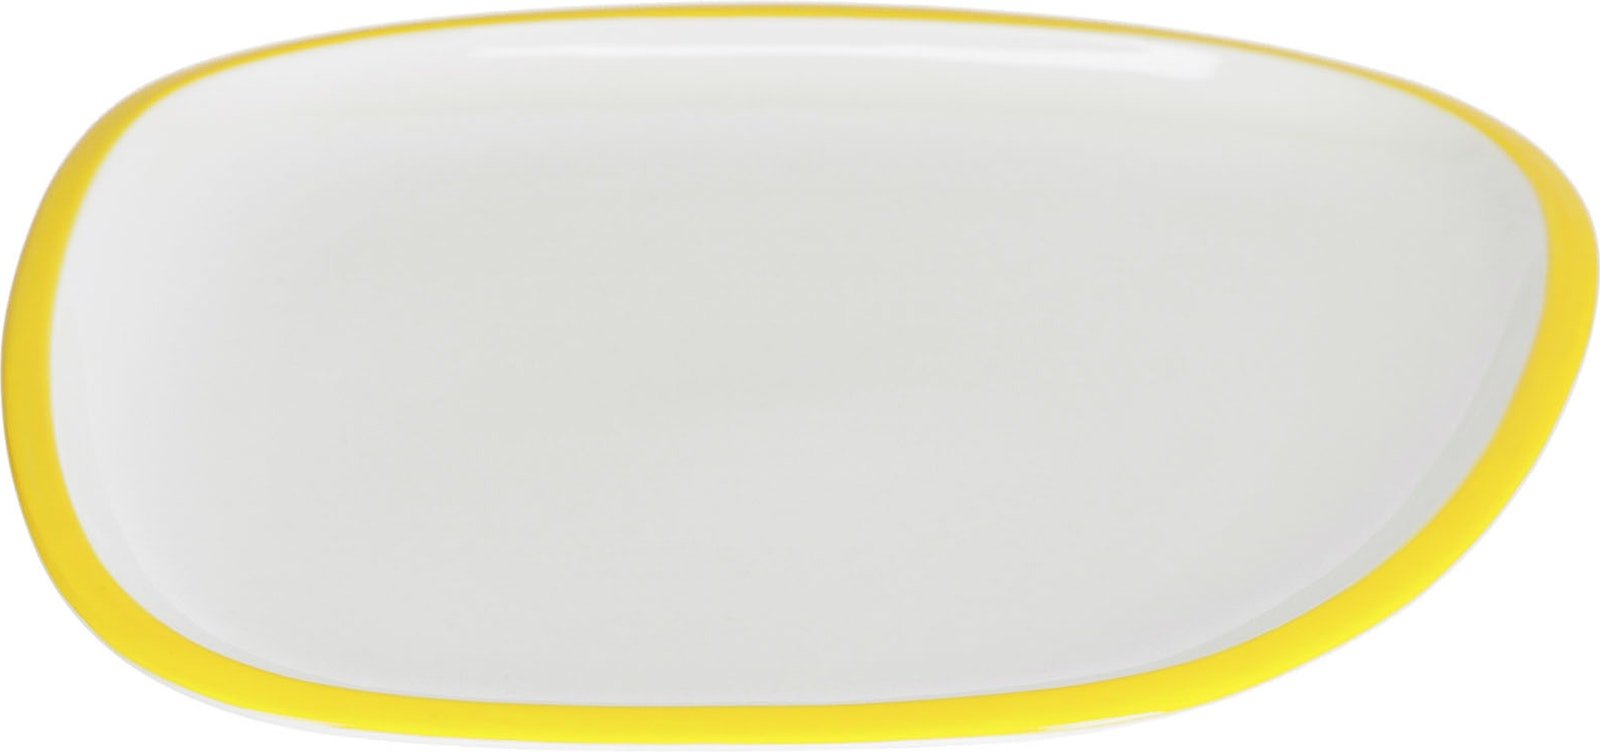 LAFORMA Odalin tallerken - gul og hvid porcelæn (29x26,5)